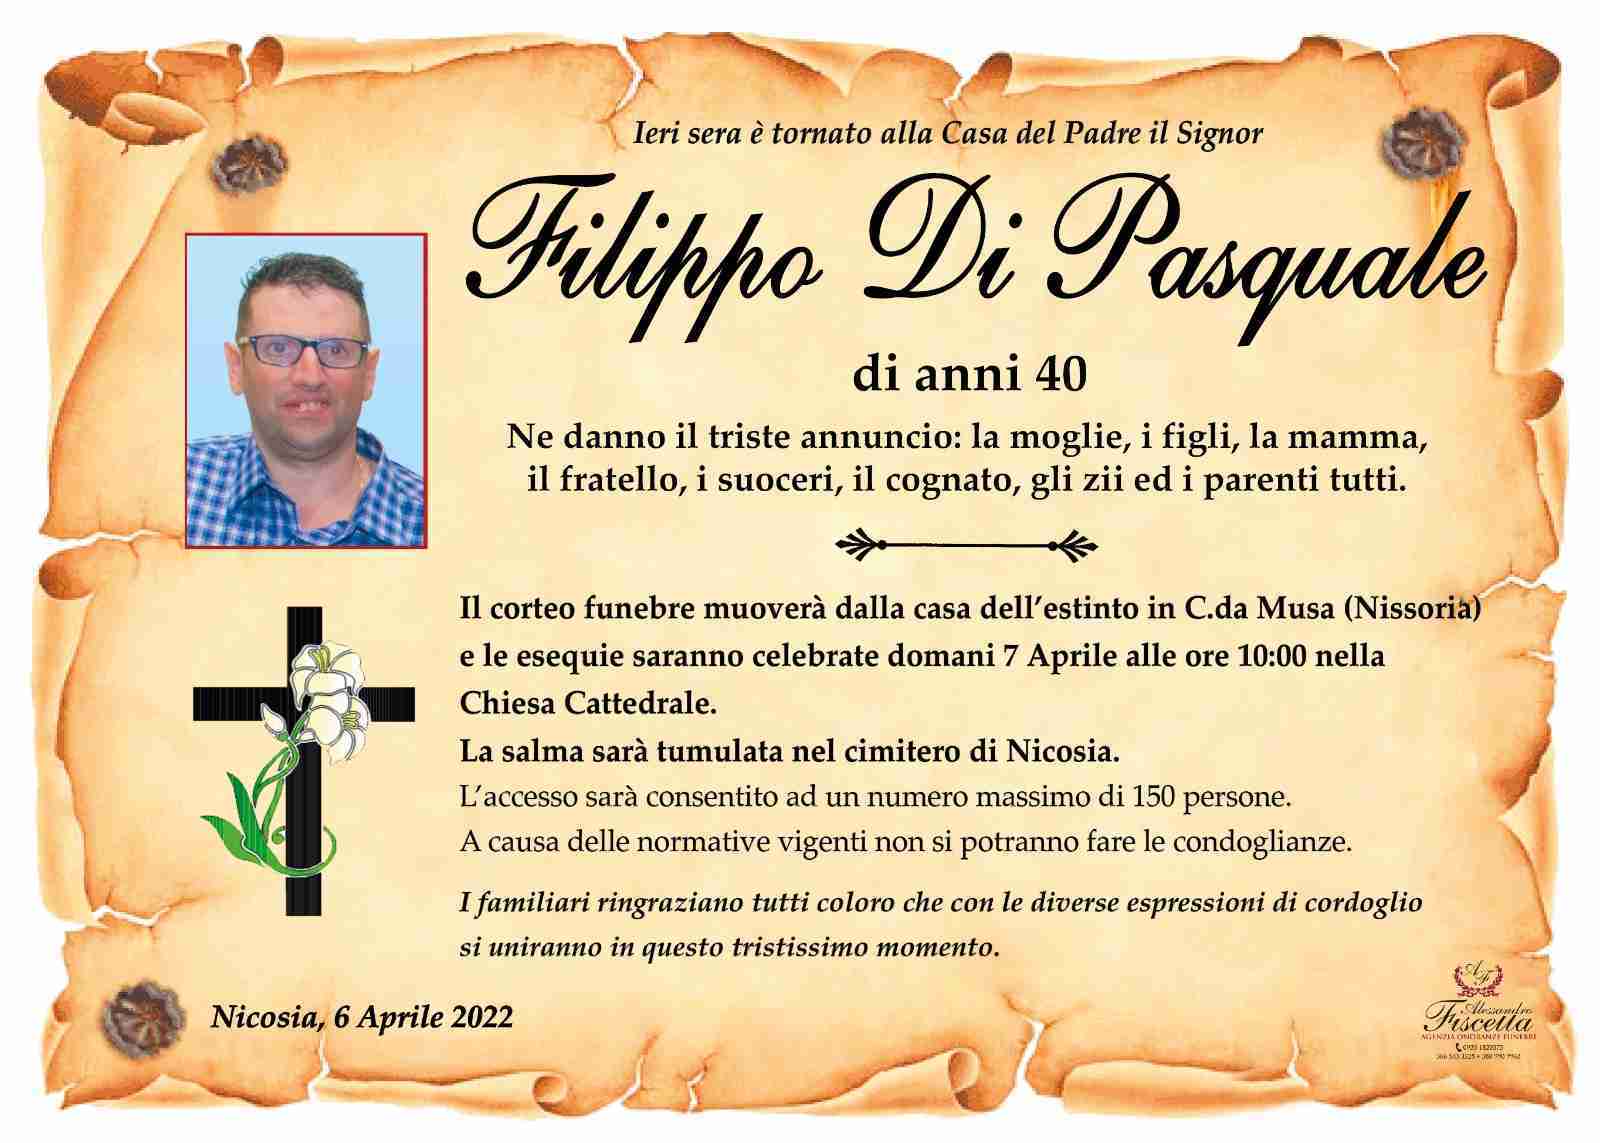 Filippo Di Pasquale